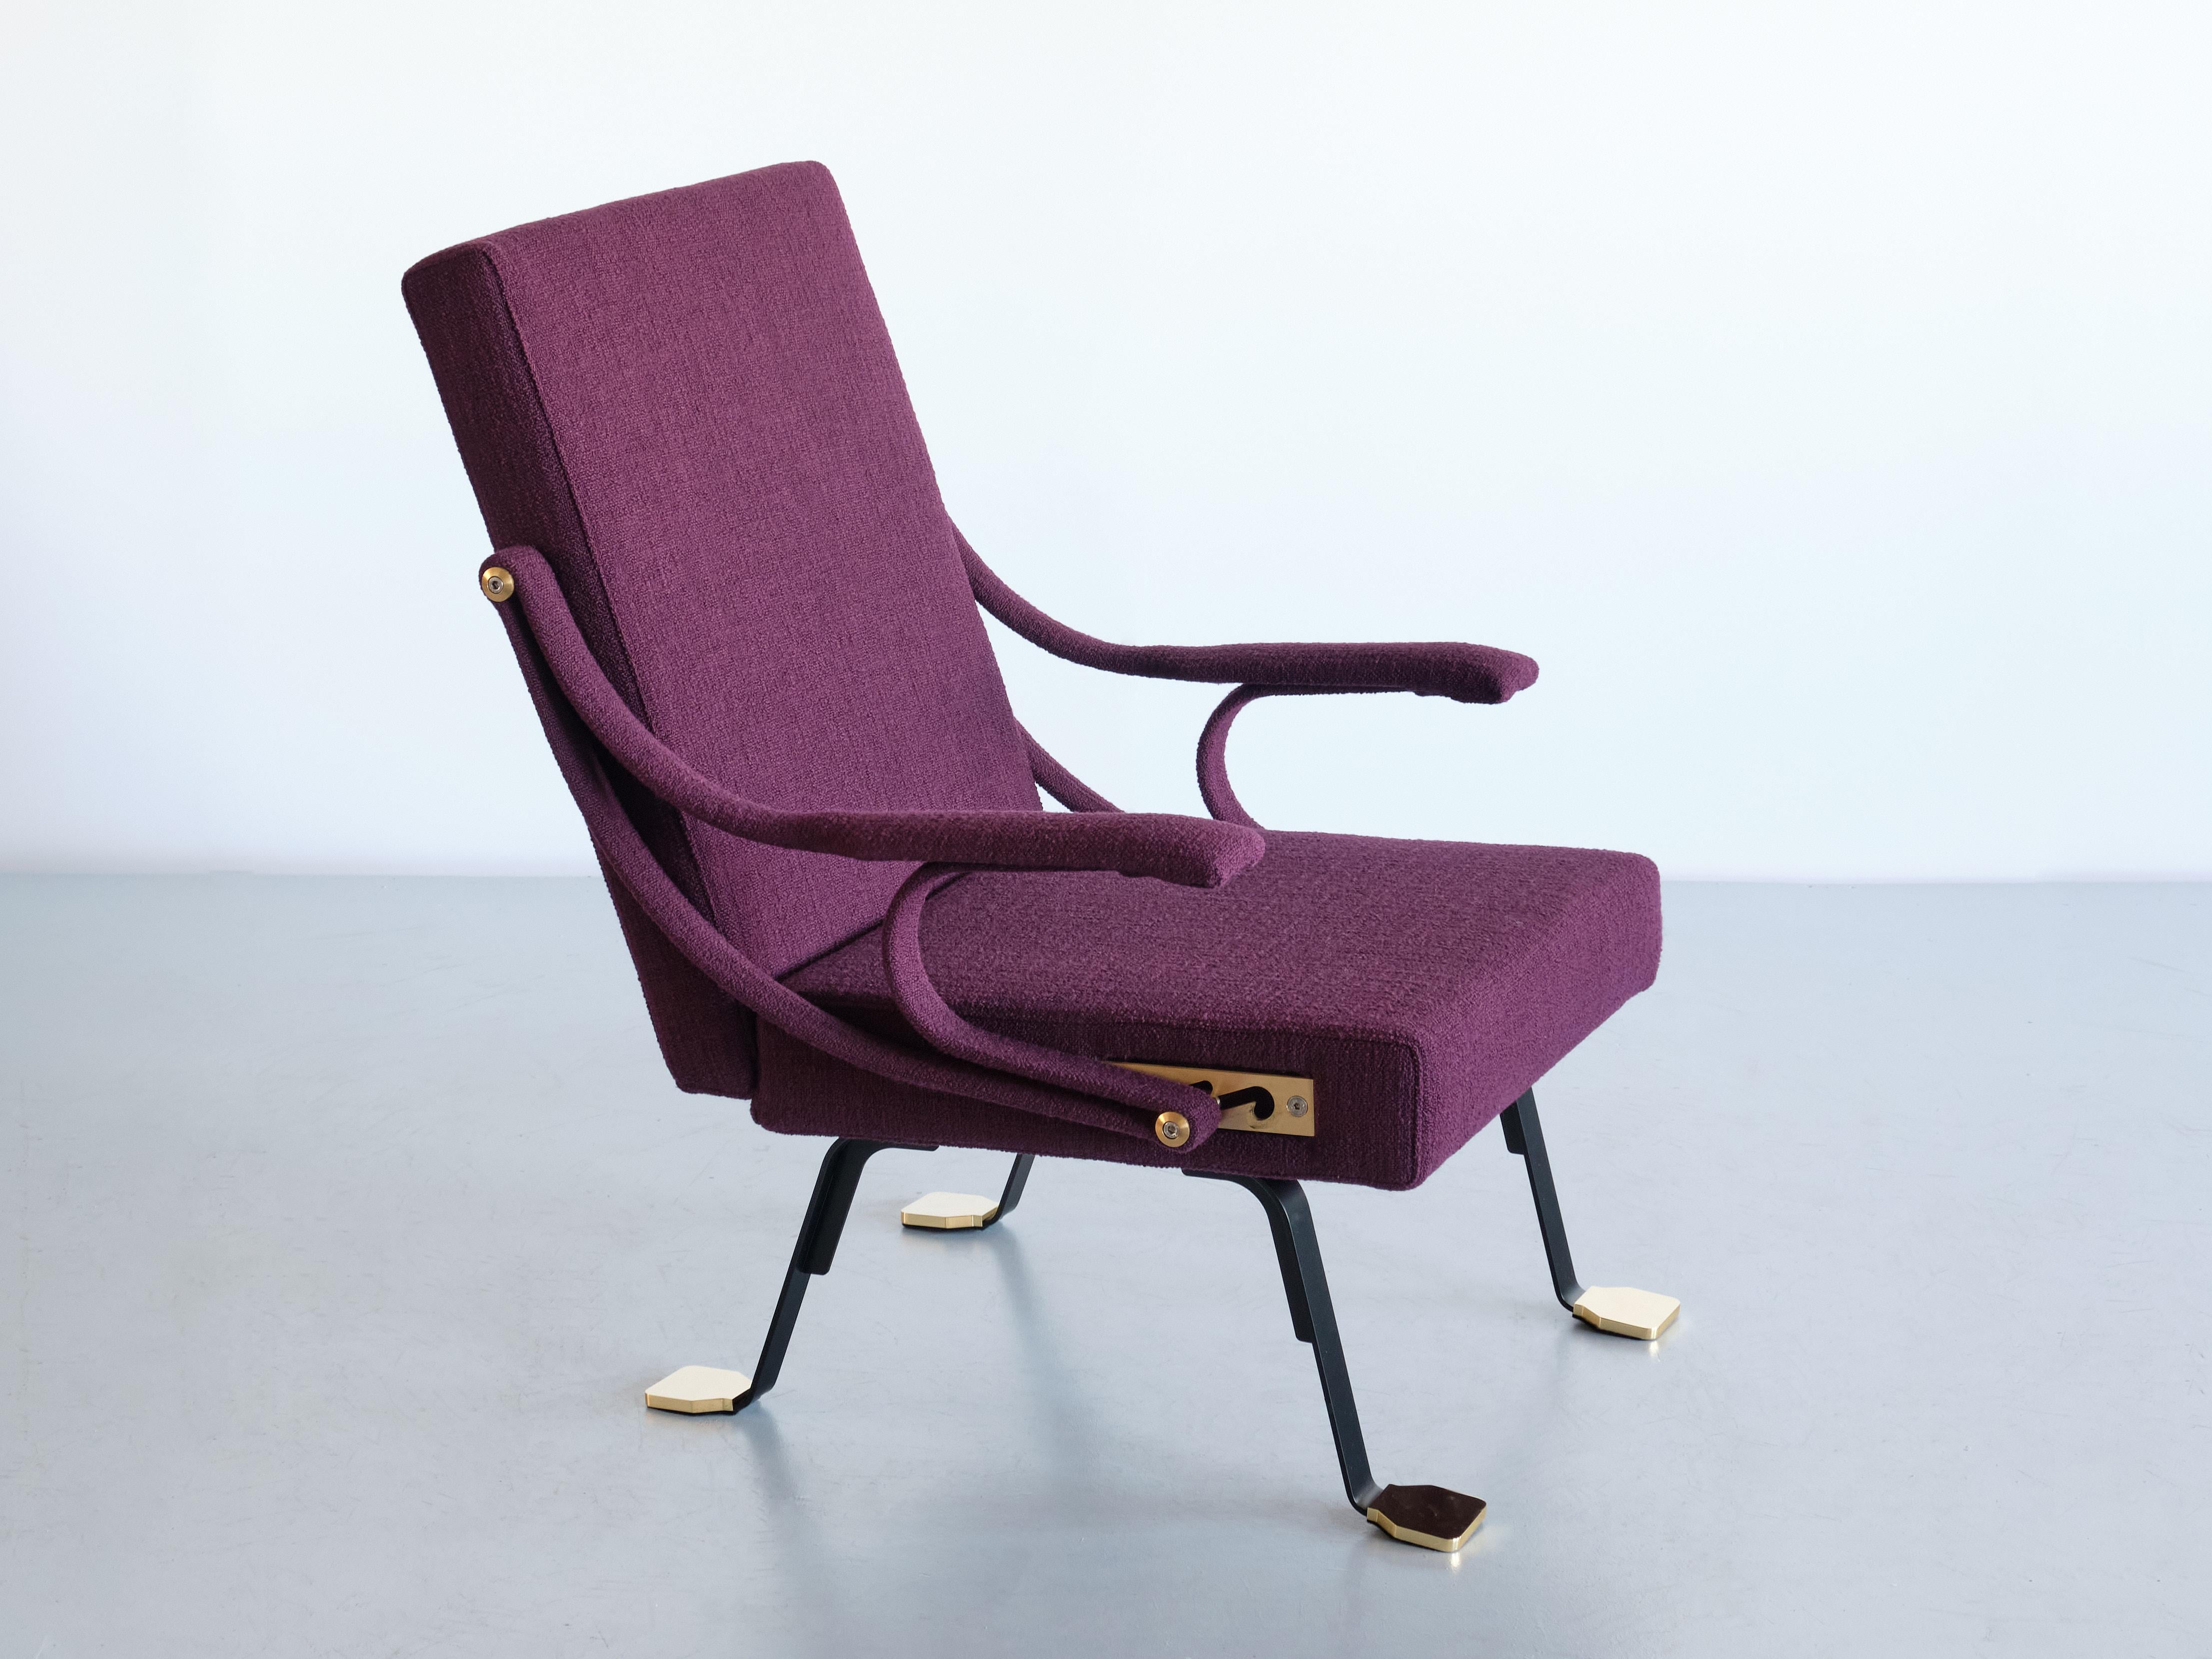 Der 1957 von Ignazio Gardella entworfene Loungesessel Digamma ist ein bequemer Sessel, der in der Tradition der italienischen Spätmoderne steht. Seine rationelle Konstruktion besteht aus zwei geometrischen Teilen - der rechteckigen gepolsterten